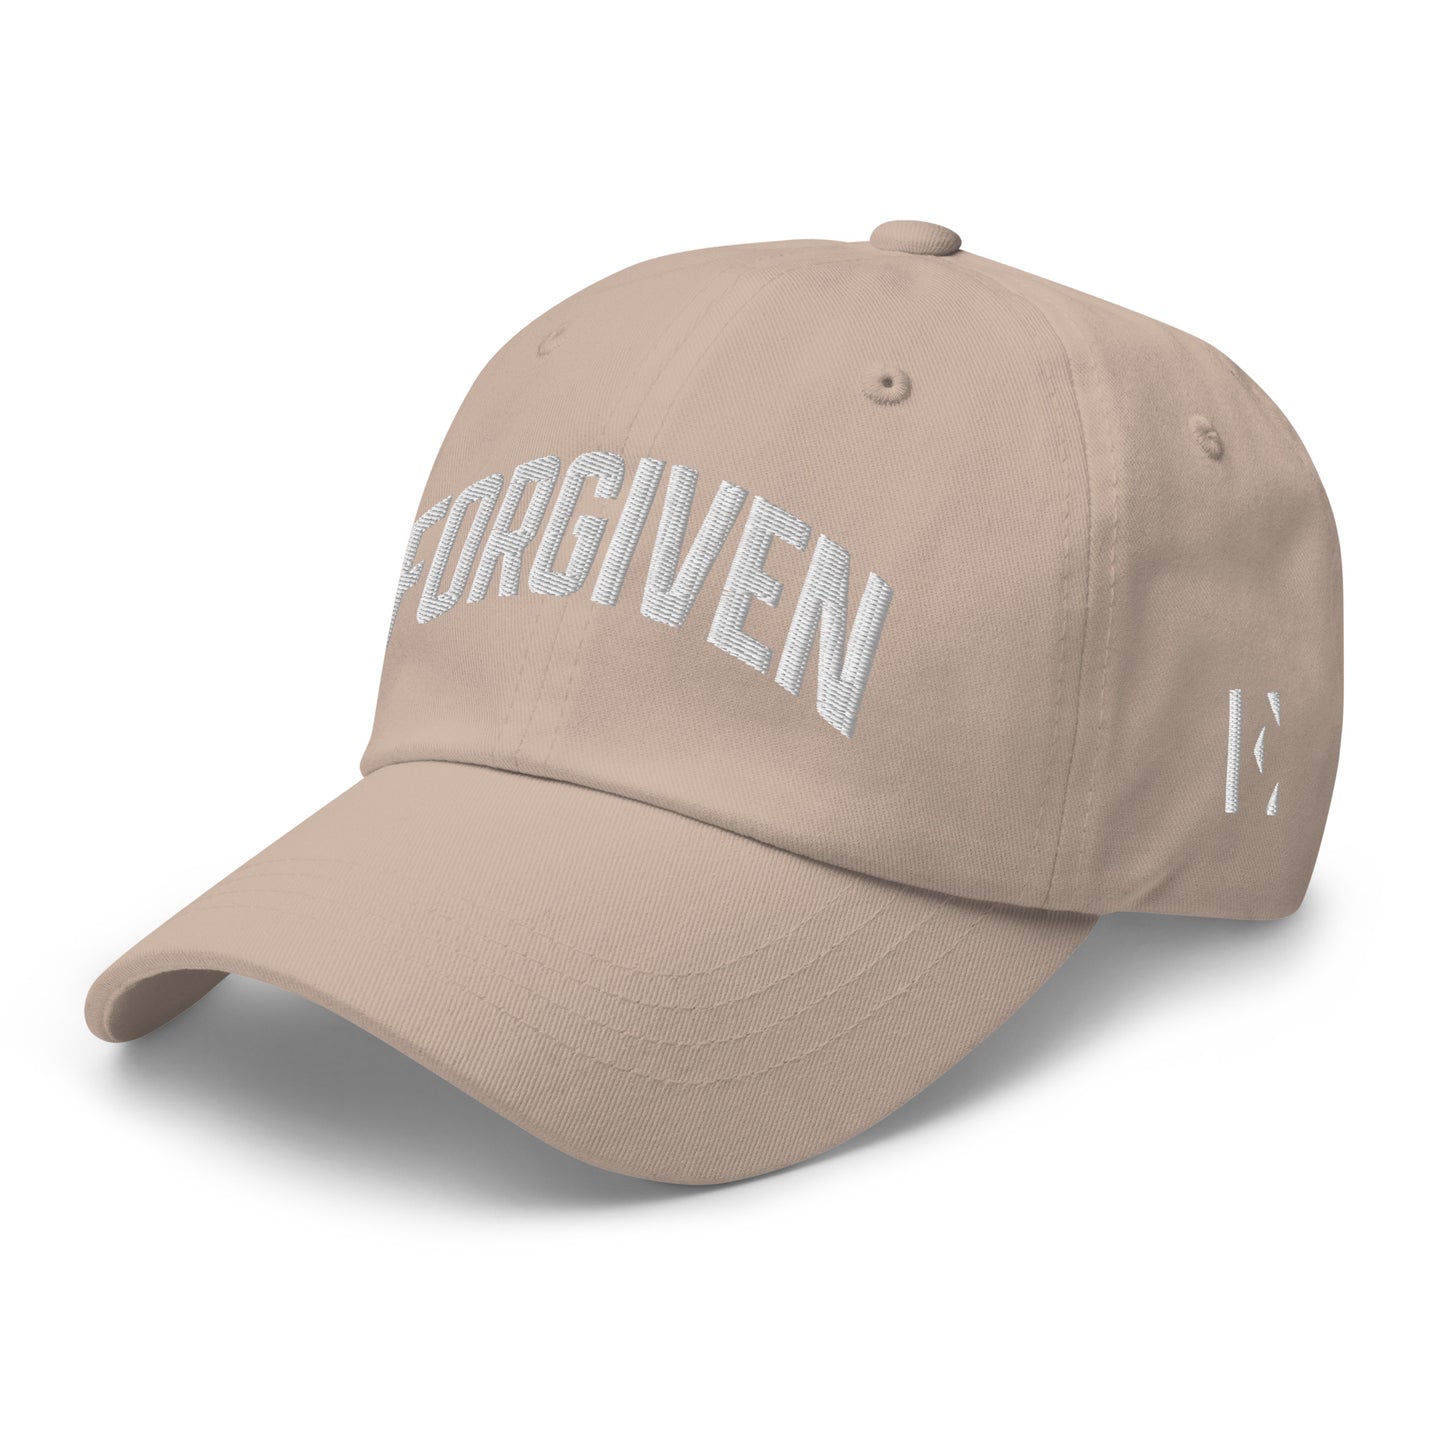 FORGIVEN Embroidered Dad hat V1